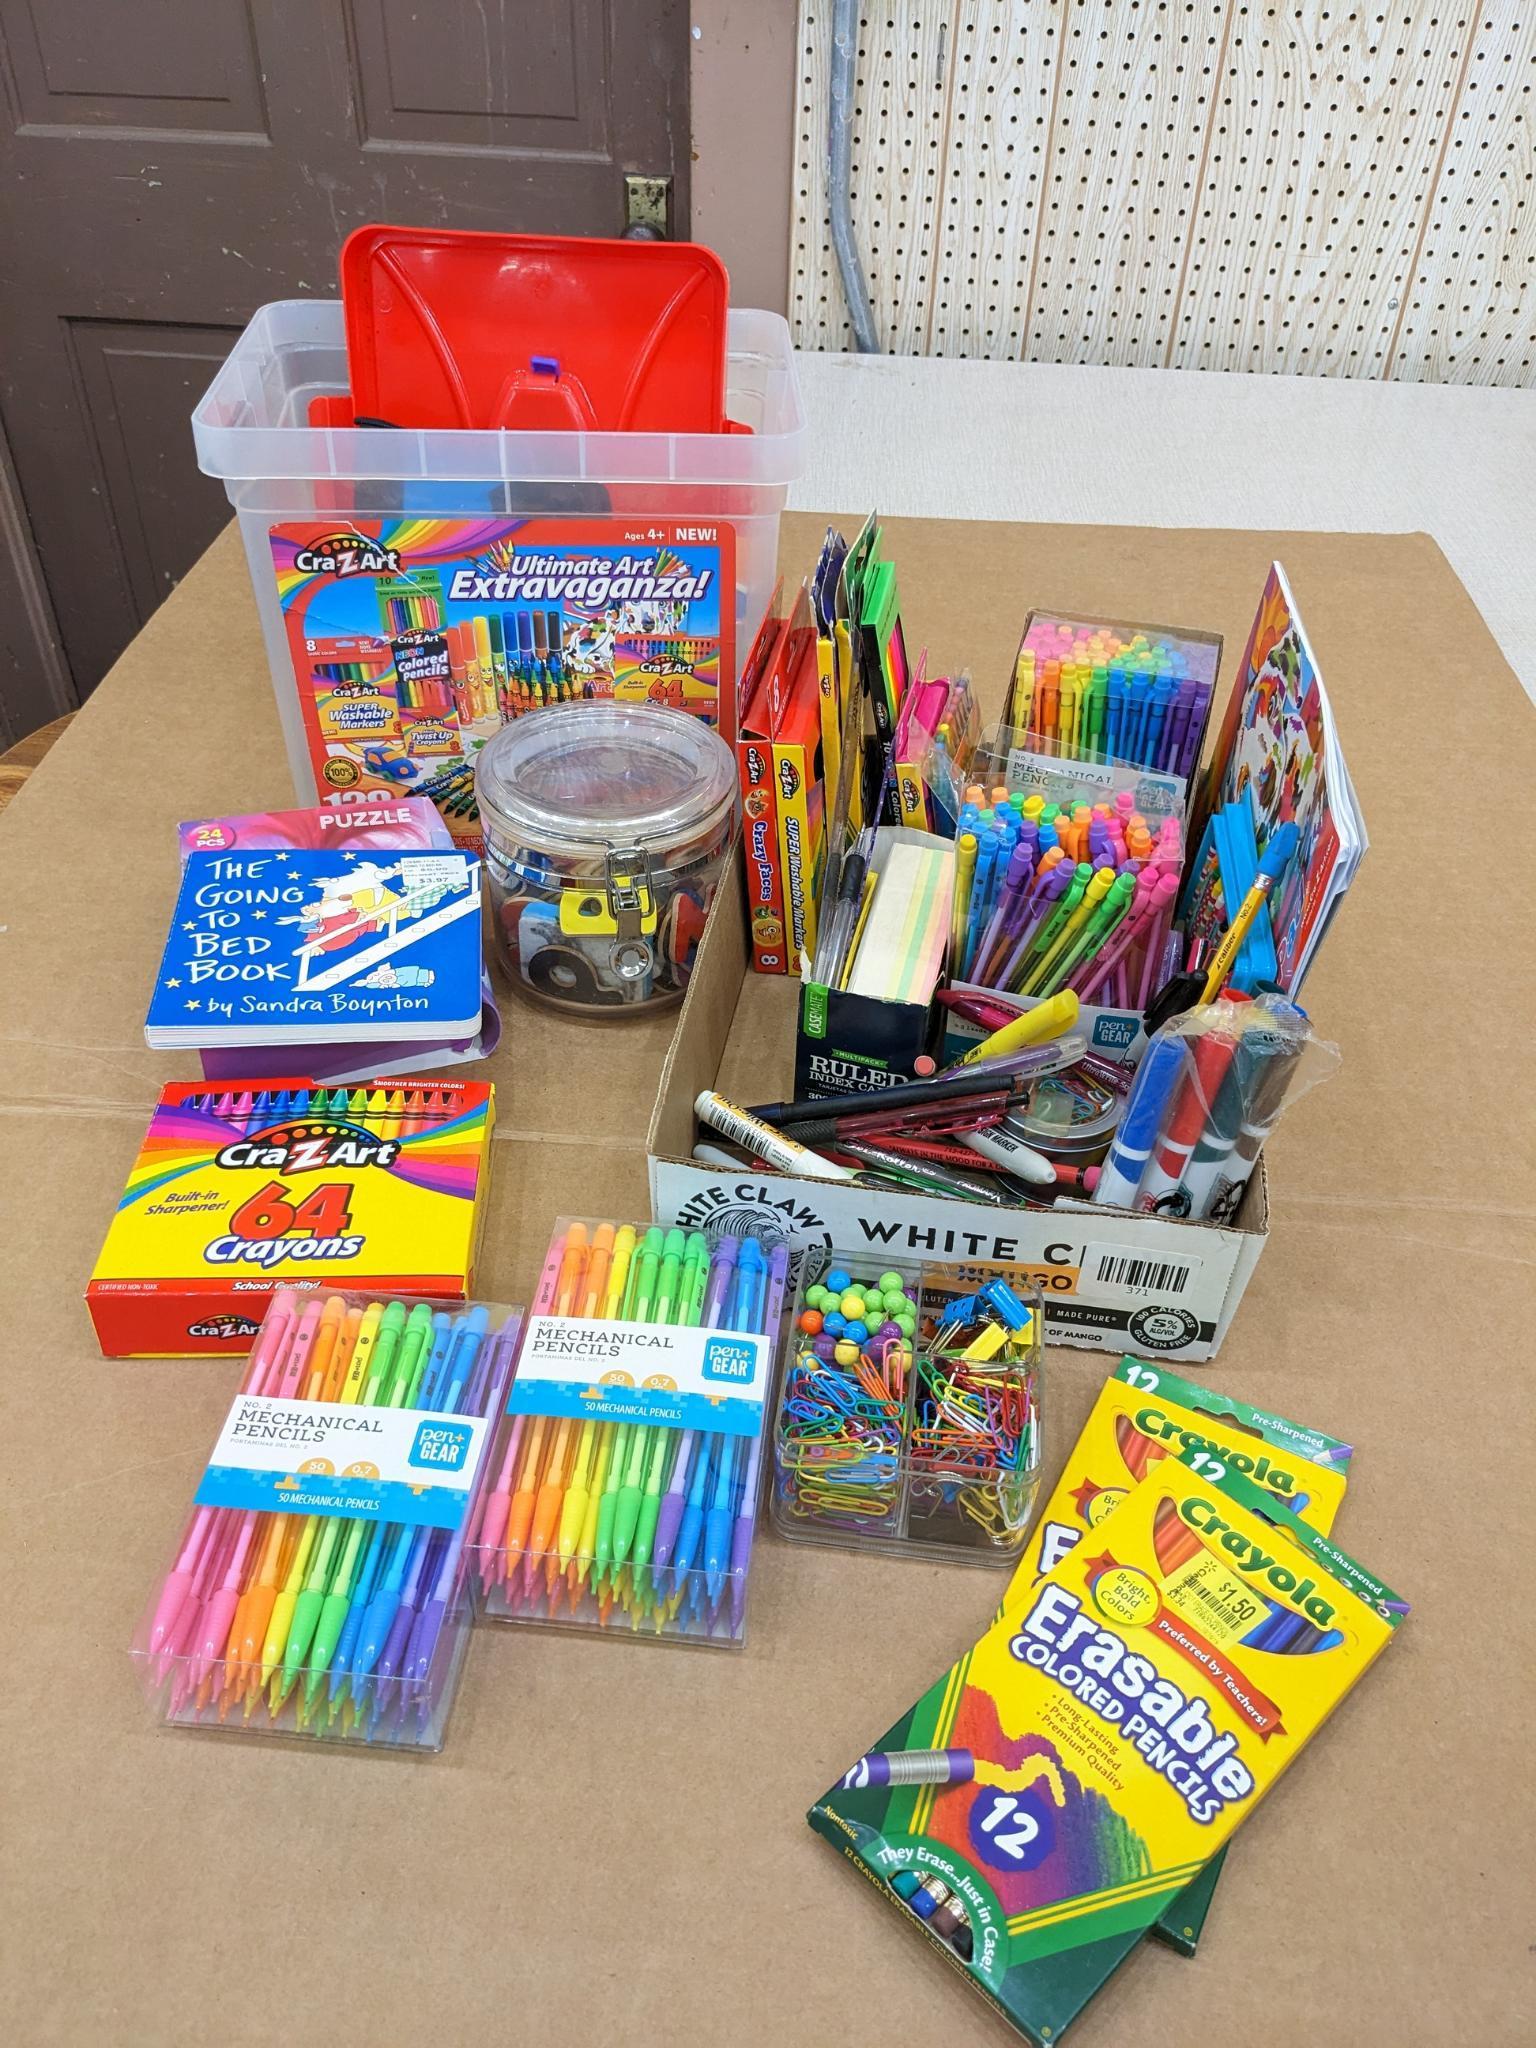 Crayola Erasable Colored Pencils, 24 per Box, 3 Boxes | BIN682424-3